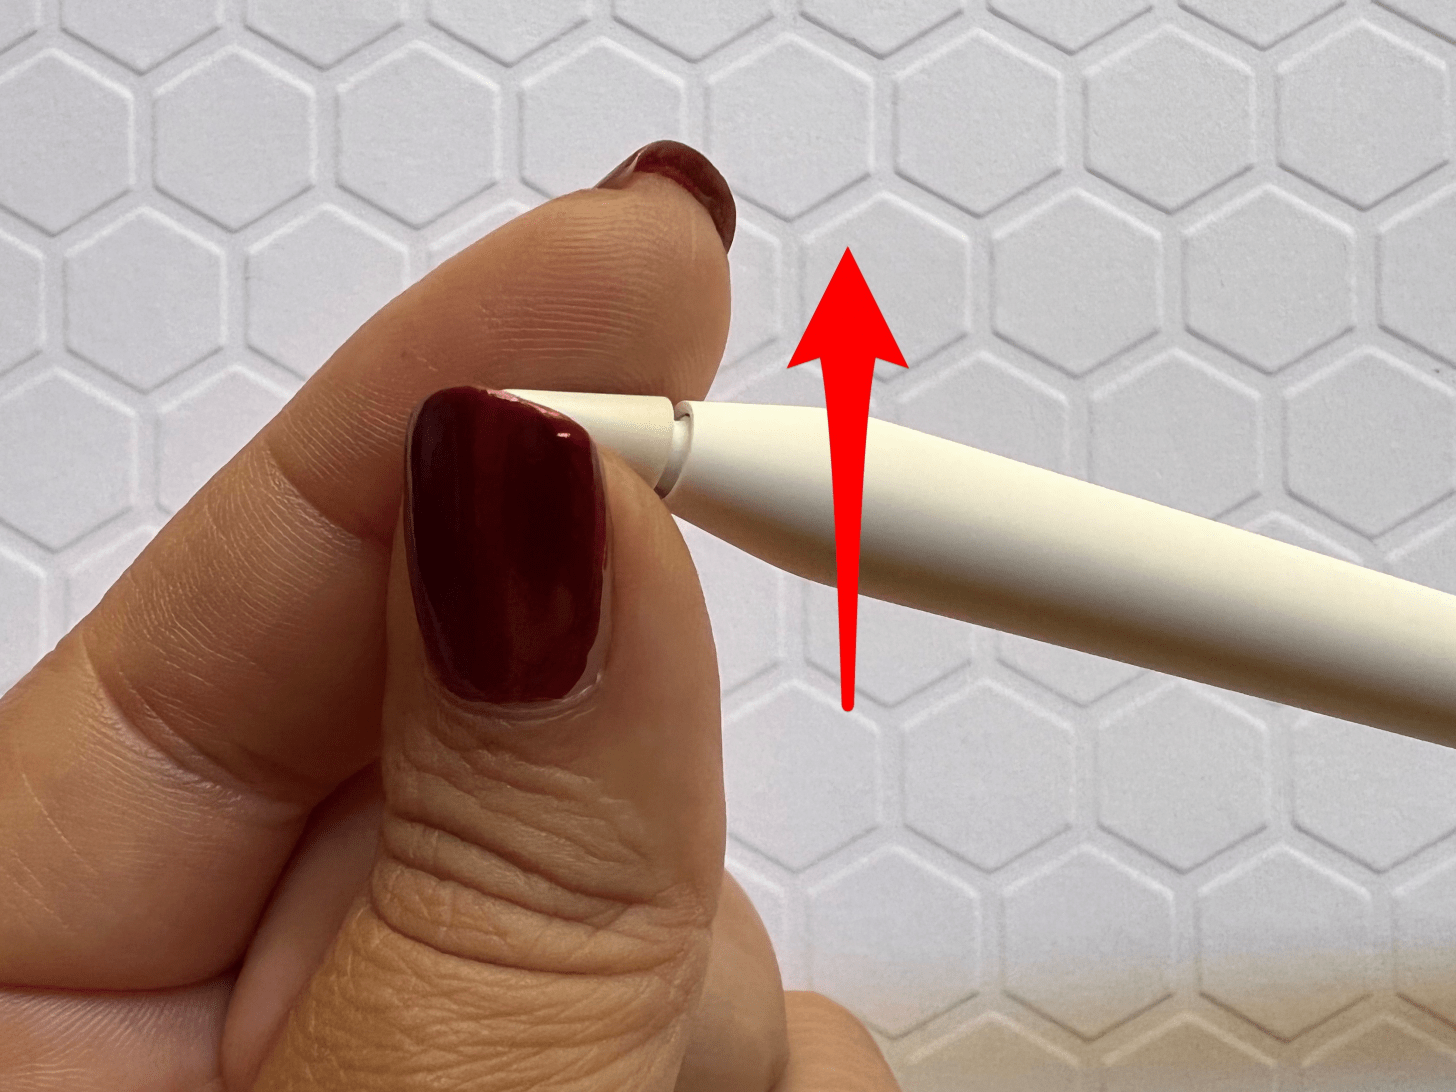 Gire con cuidado la punta del Apple Pencil en el sentido contrario a las agujas del reloj; el lápiz del iPad no funciona